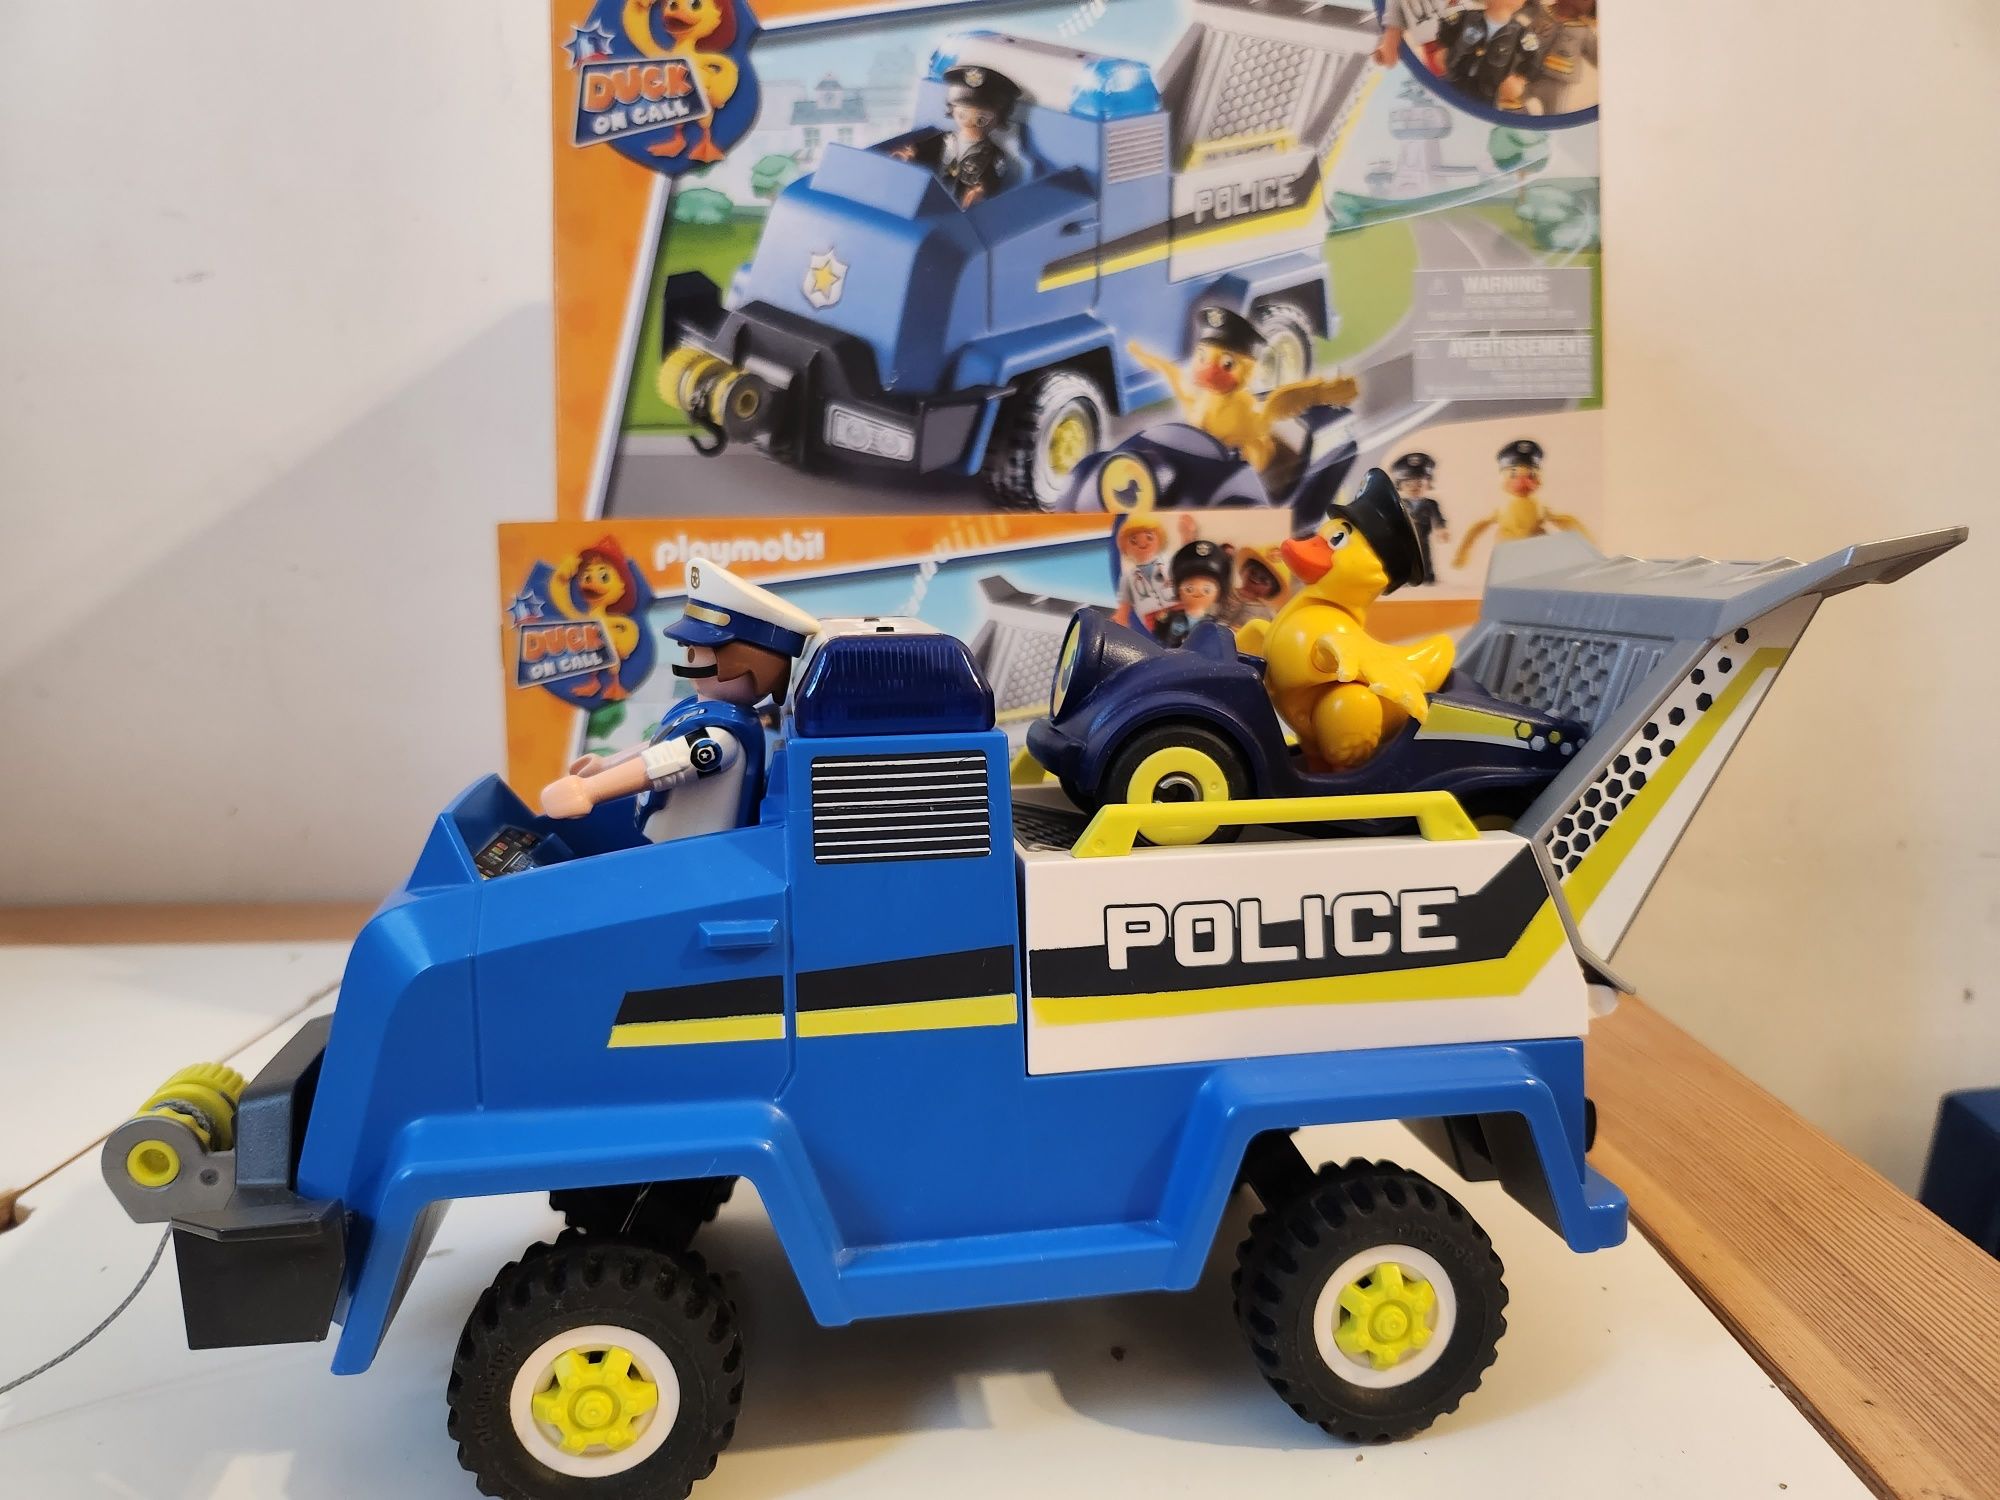 Policja playmobil 70915